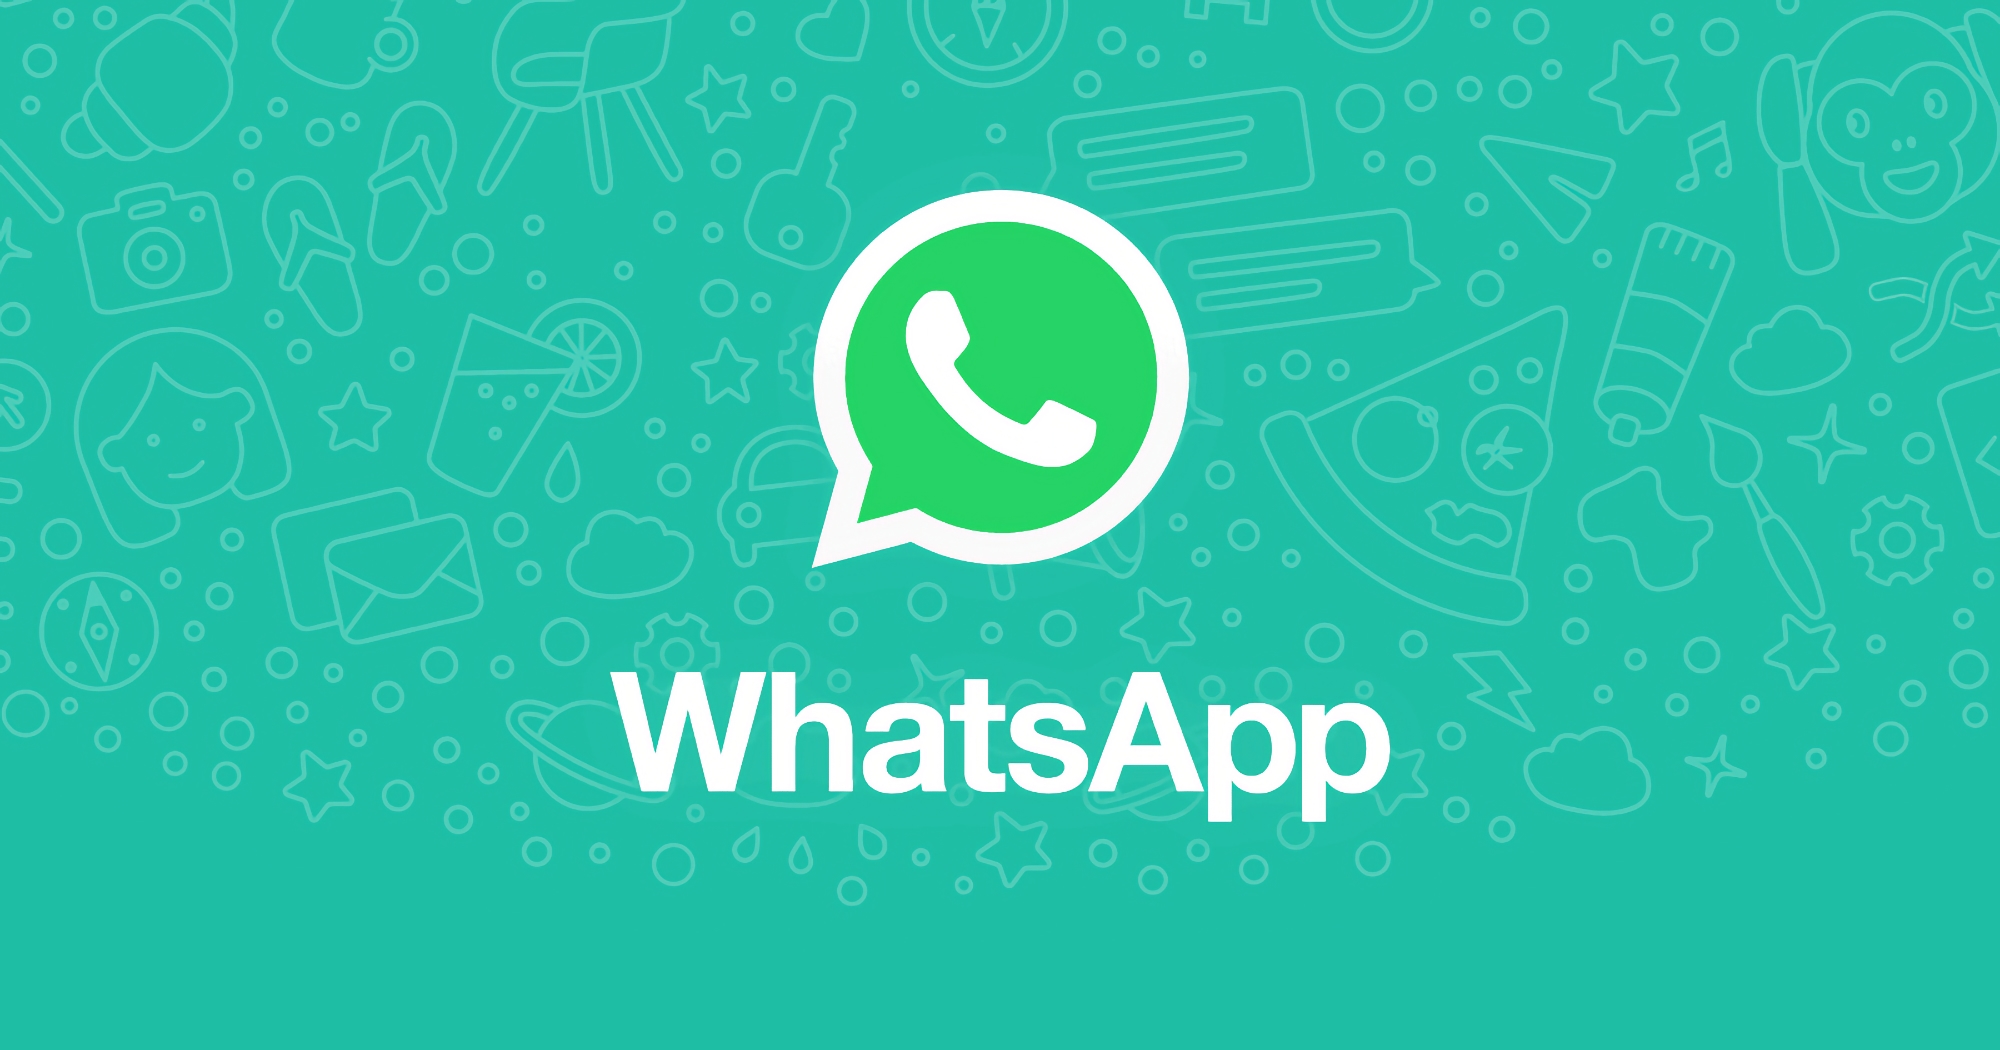 Meta prepara nuevas funciones para WhatsApp, ya se están probando en Android, iOS y PC